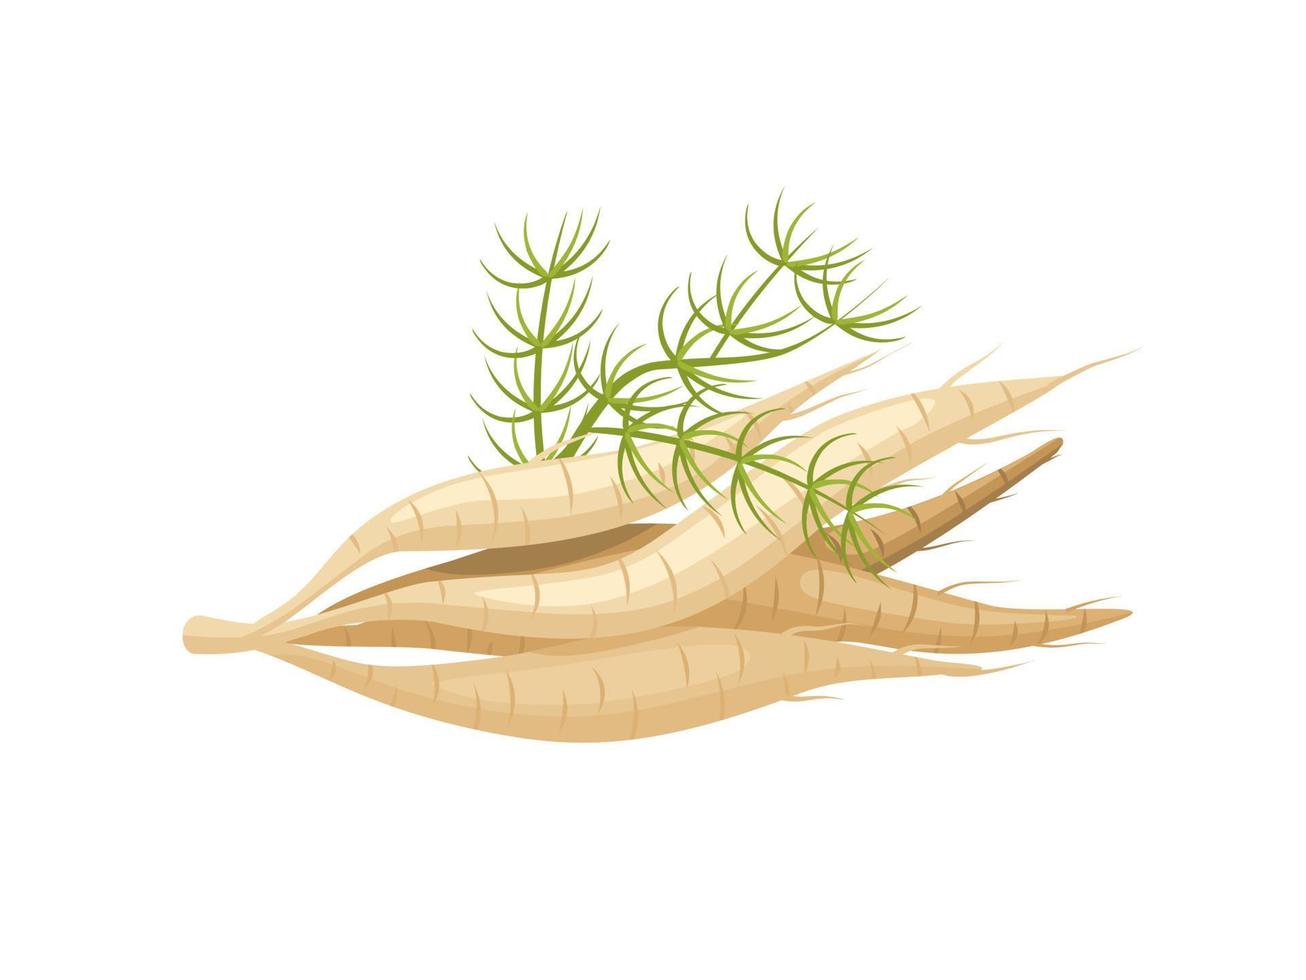 ilustração vetorial, raiz shatavari ou aspargo racemosus, isolado em um fundo branco, planta de ervas com propriedades medicinais. vetor